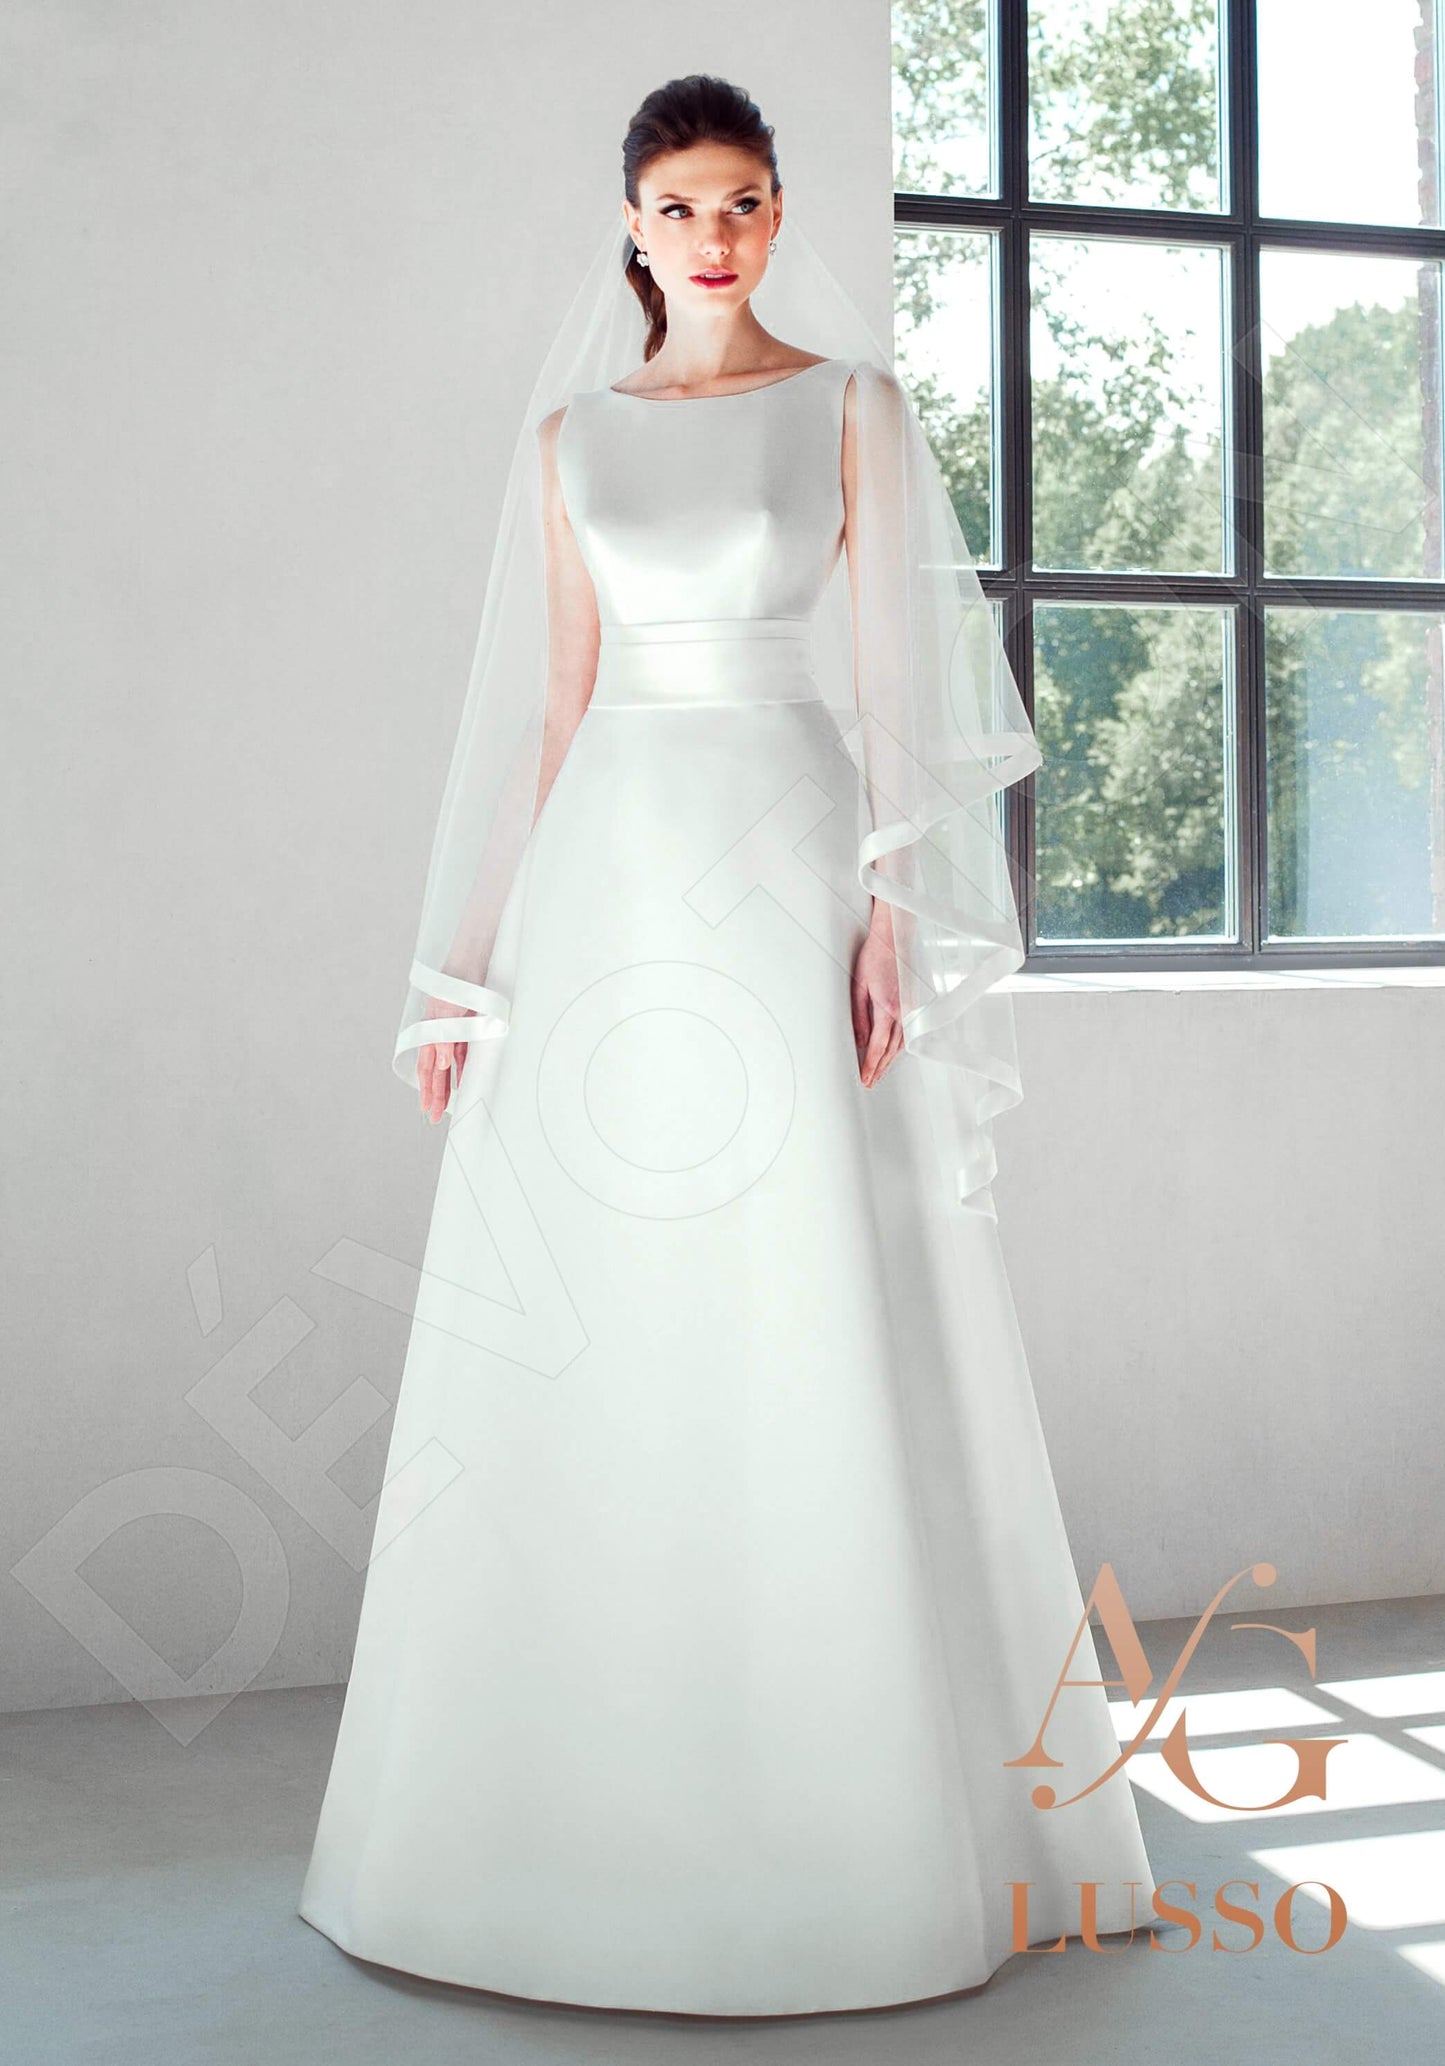 Heathen Open back A-line Sleeveless Wedding Dress Front